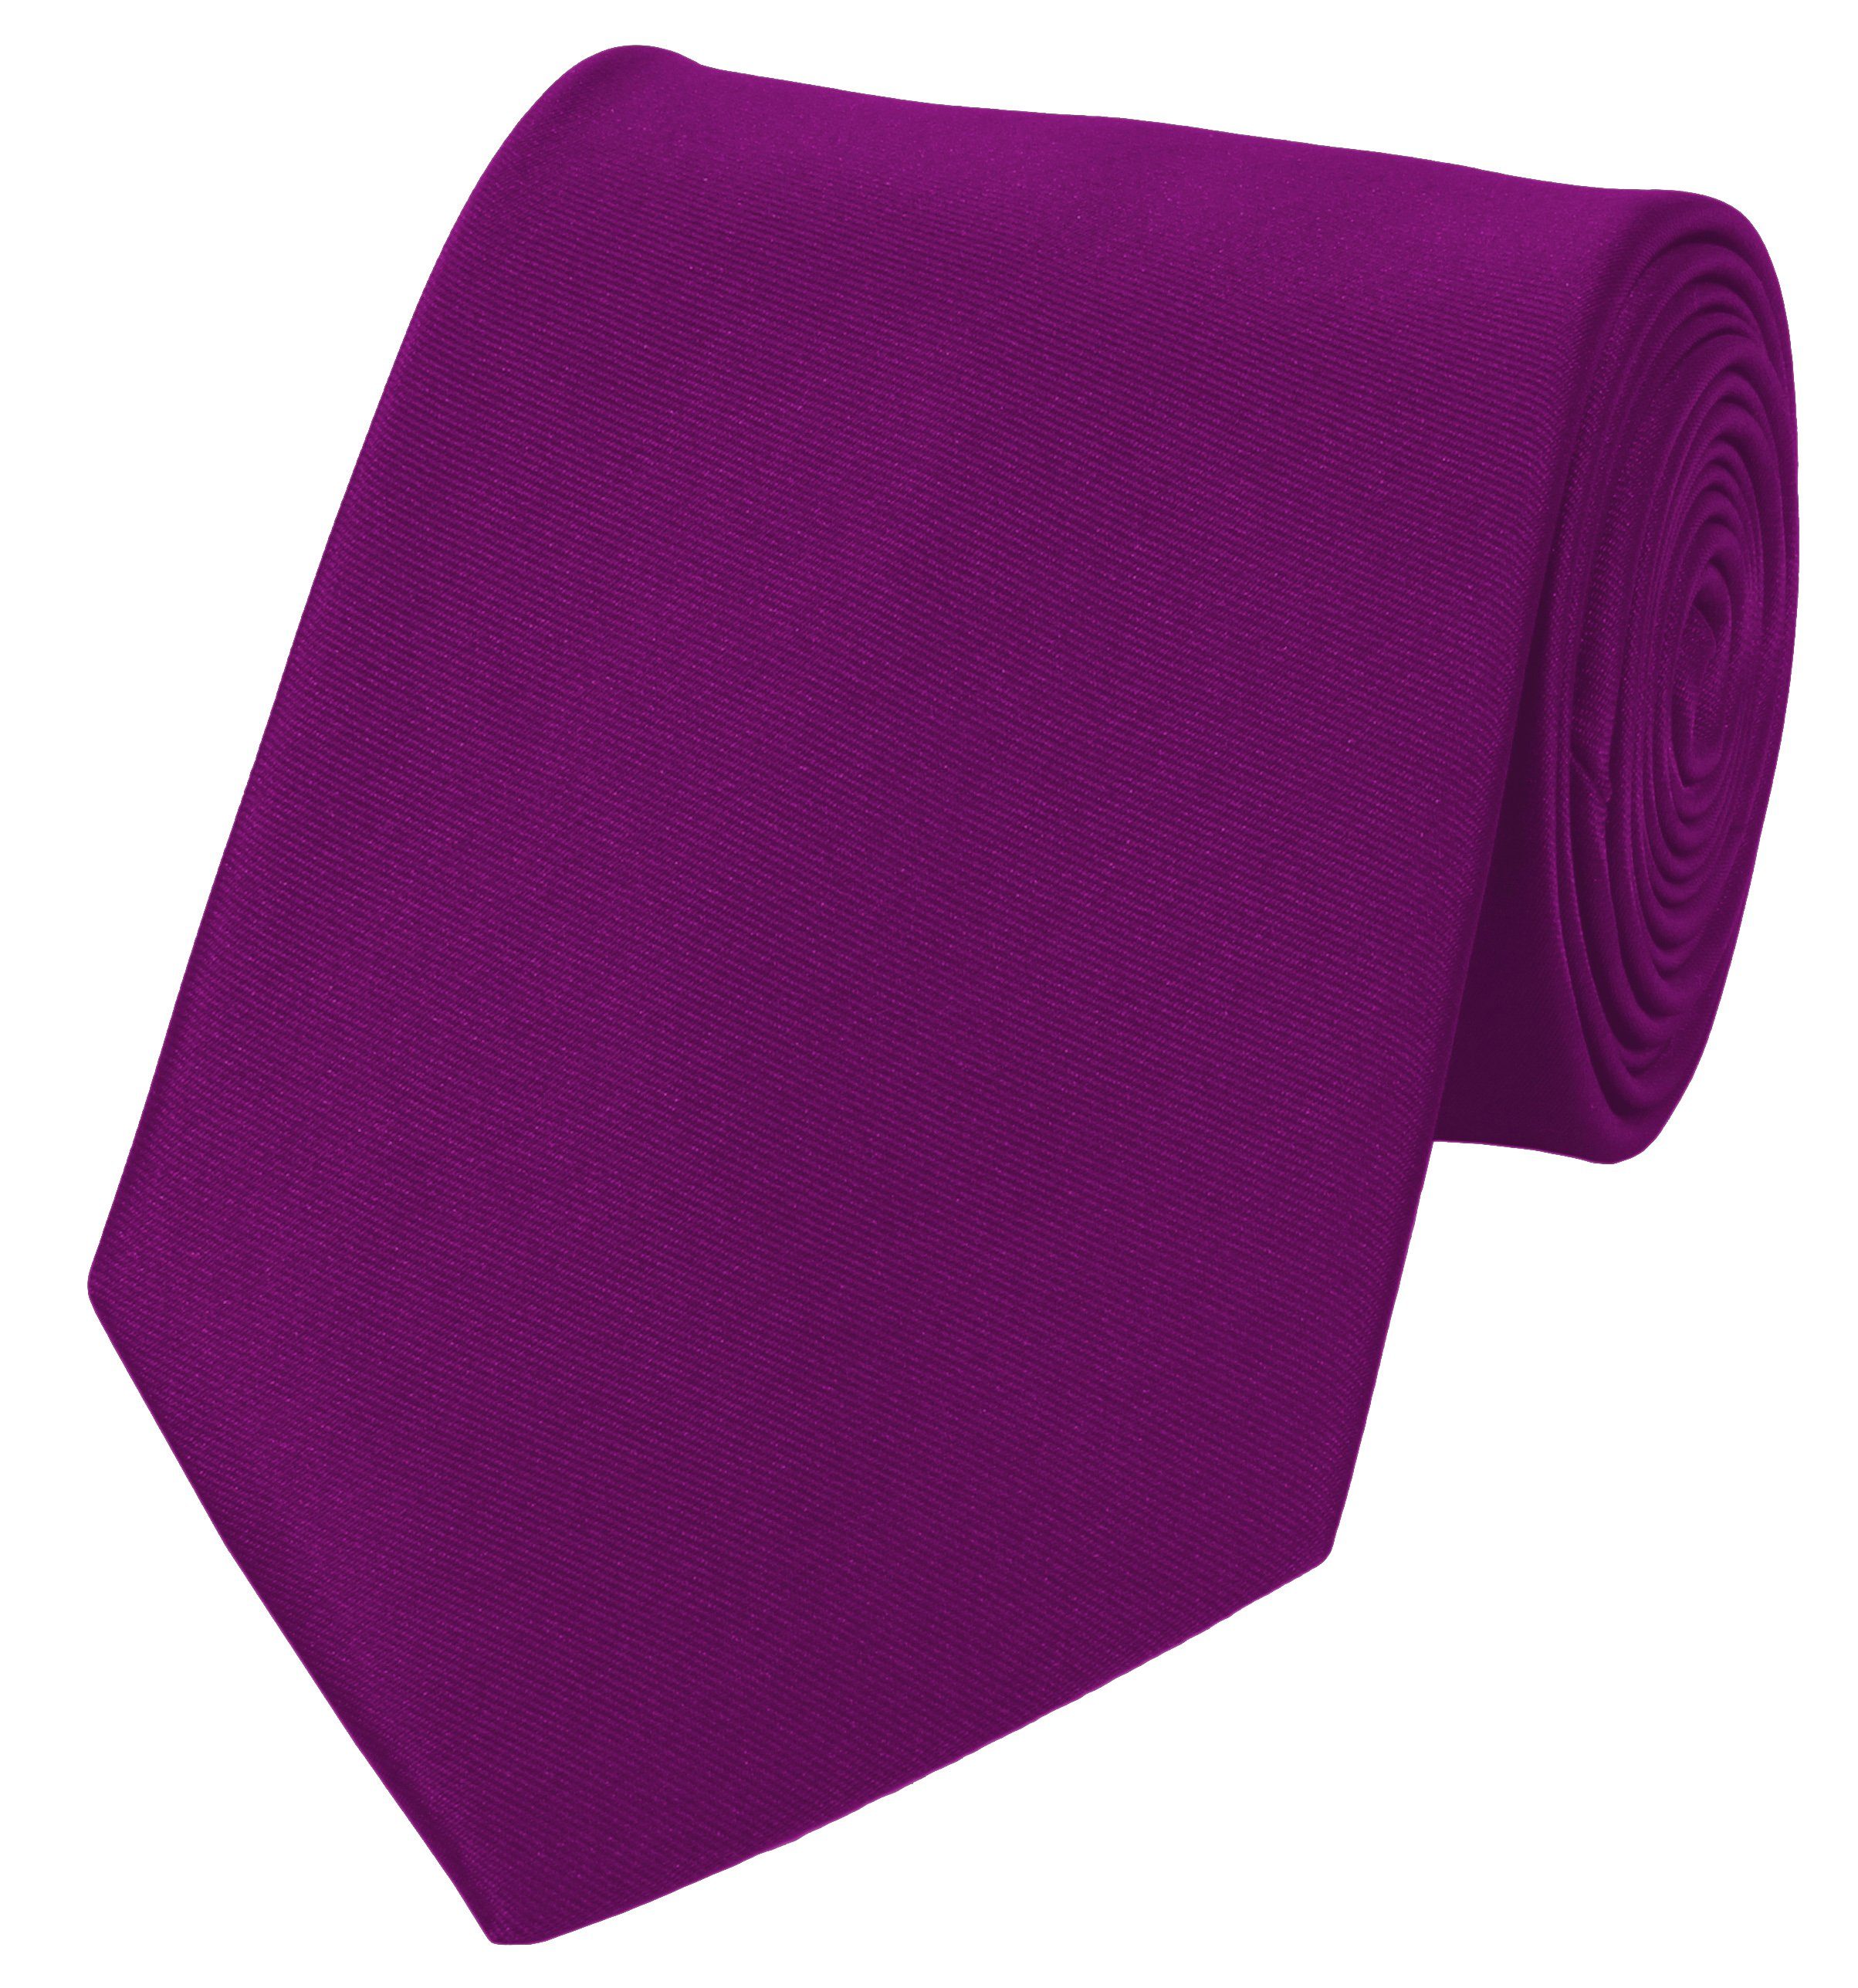 Flieder Schlips Männer verschiedene (ohne Krawatte Purple (8cm), Orchid Farini Box, - Krawatte Lila Unifarben) 8cm Lila - Breit Fabio in Herren